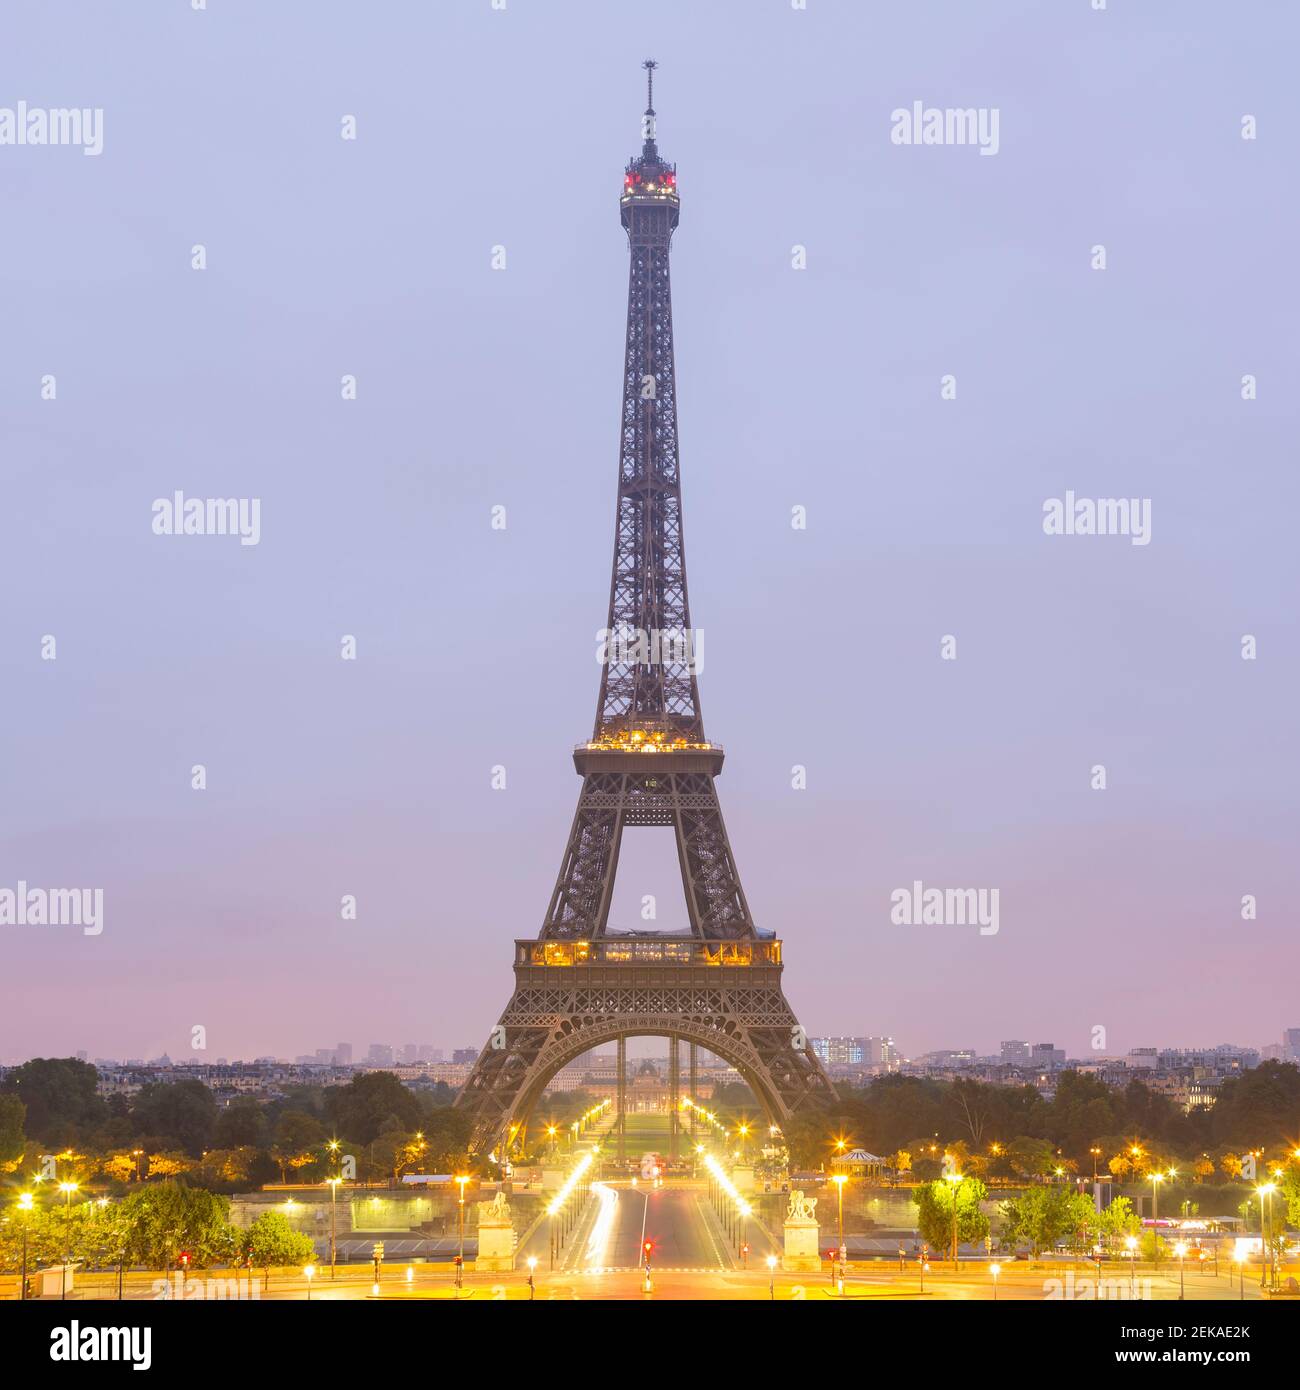 France, Ile-de-France, Paris, Eiffel Tower at dawn Stock Photo